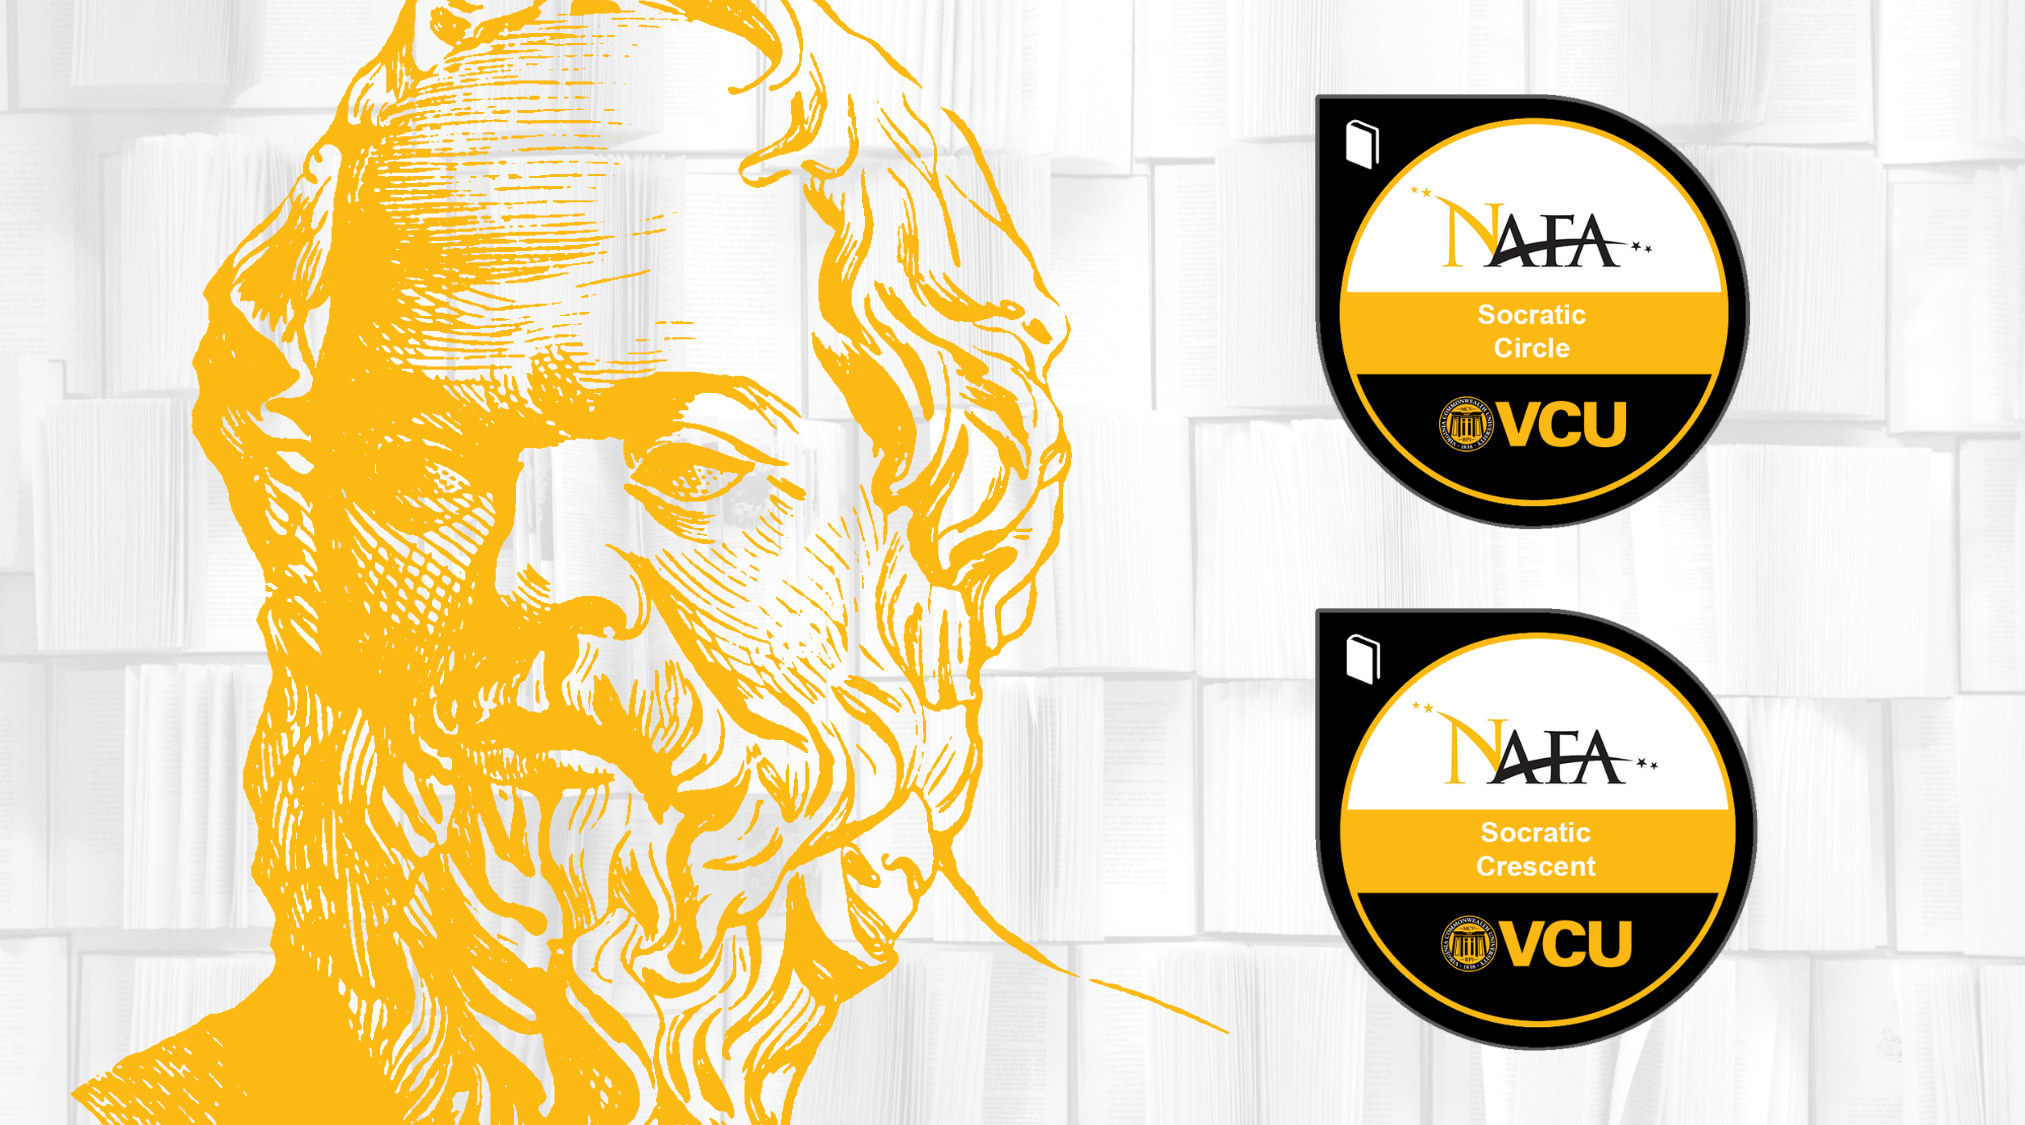 Socrates portrait next to NAFA digital badges Socratic Circle and Socratic Crescent